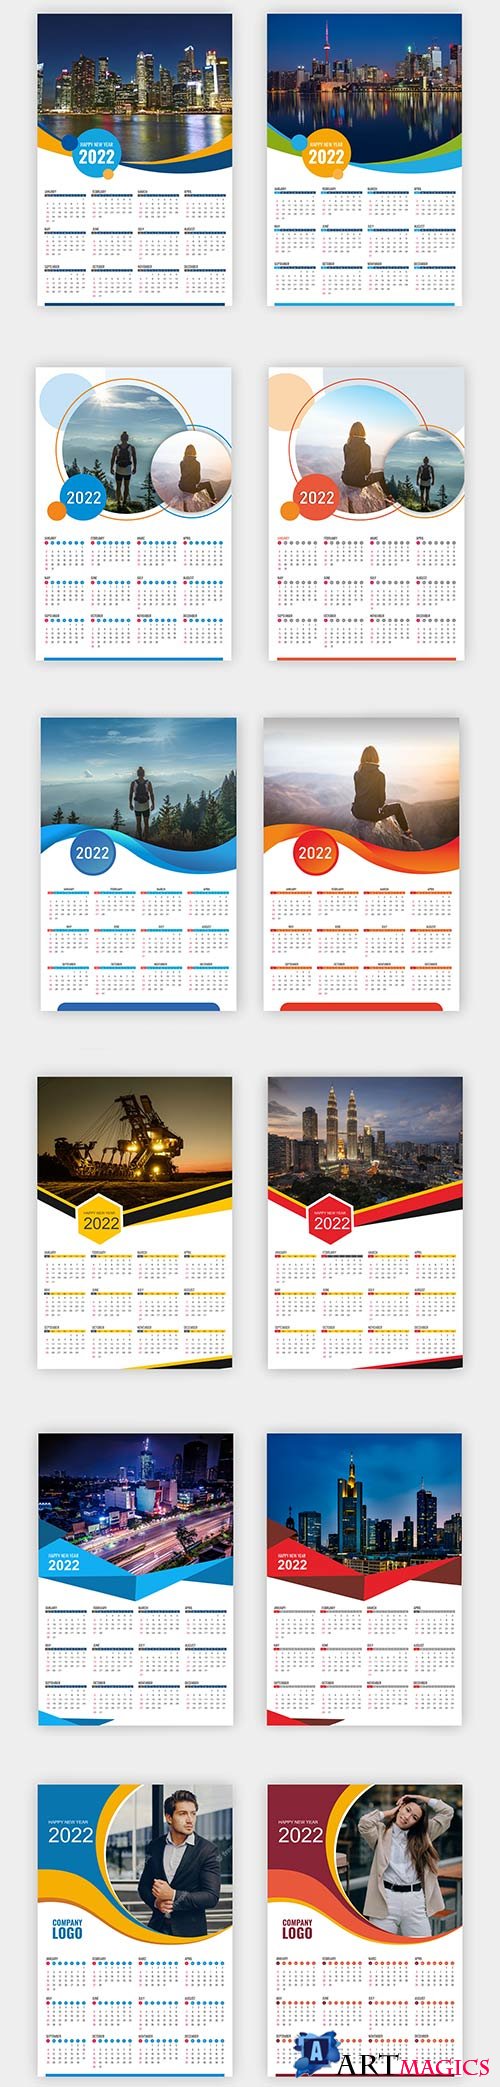 Calendar 2022 templates elegant premium vector